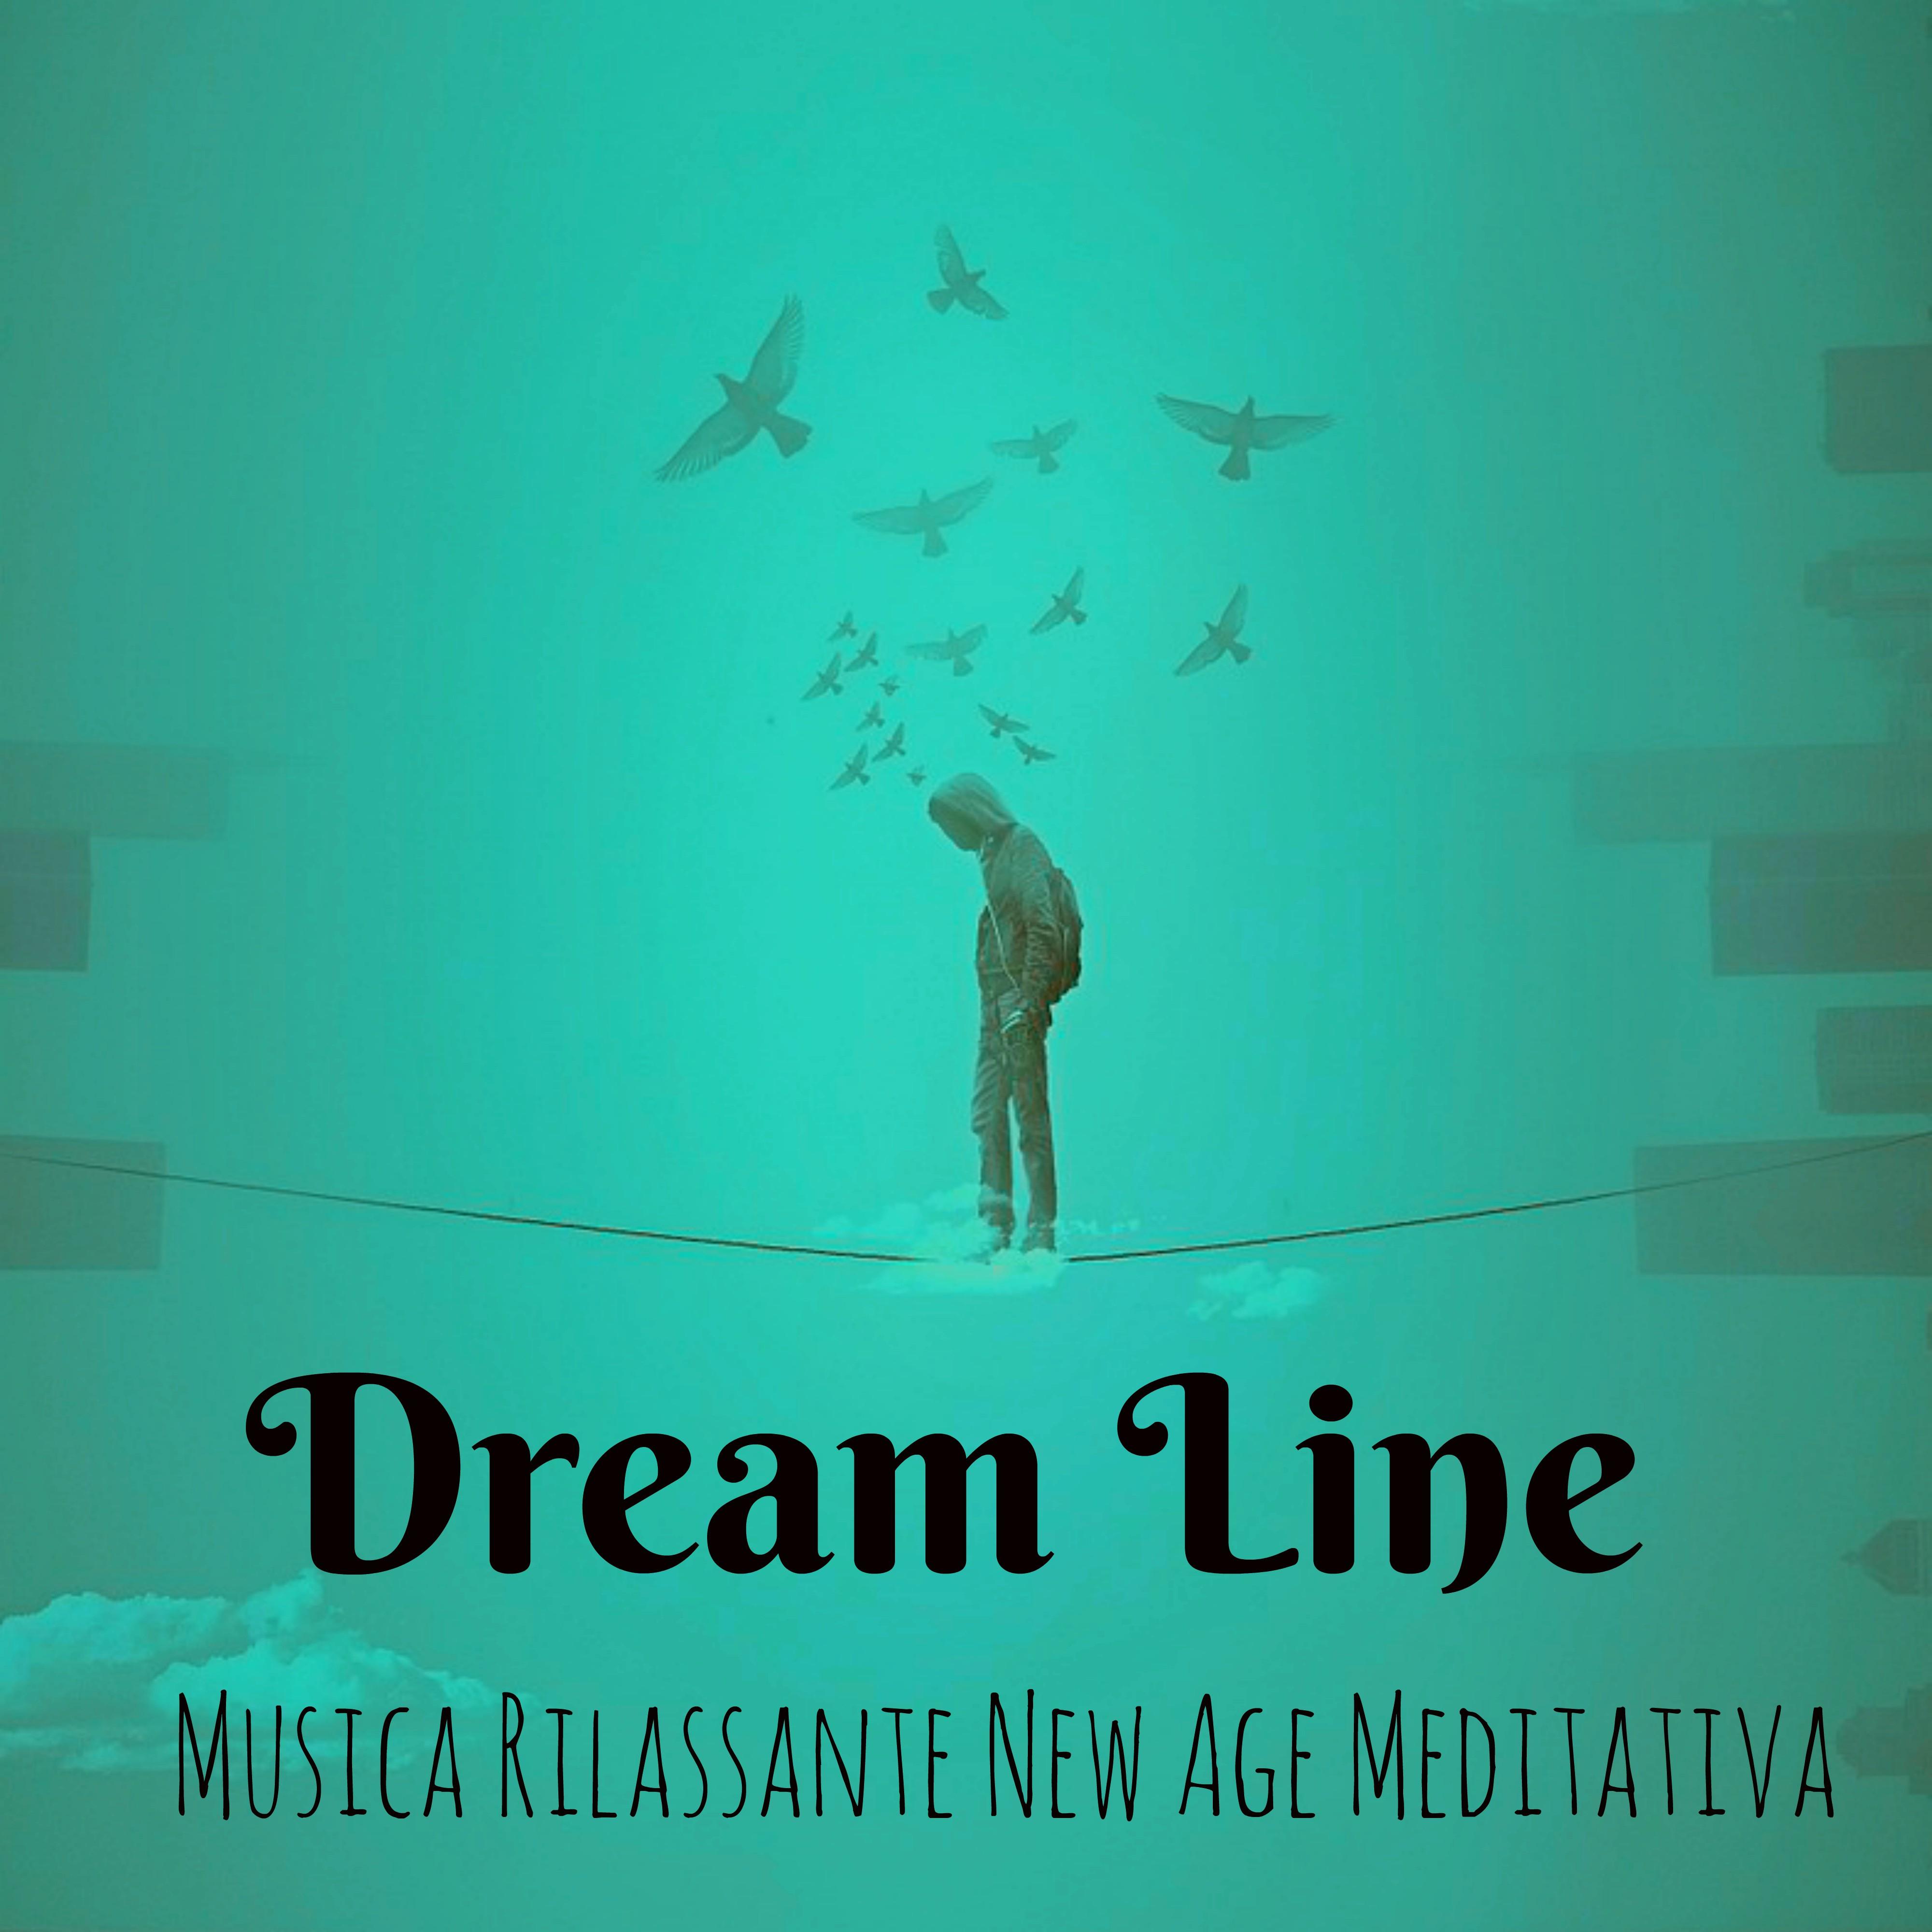 Dream Line - Musica Rilassante New Age Meditativa per Esercizi di Rilassamento Stimolazione Cerebrale Profonda Salute e Benessere con Suoni Strumentali della Natura